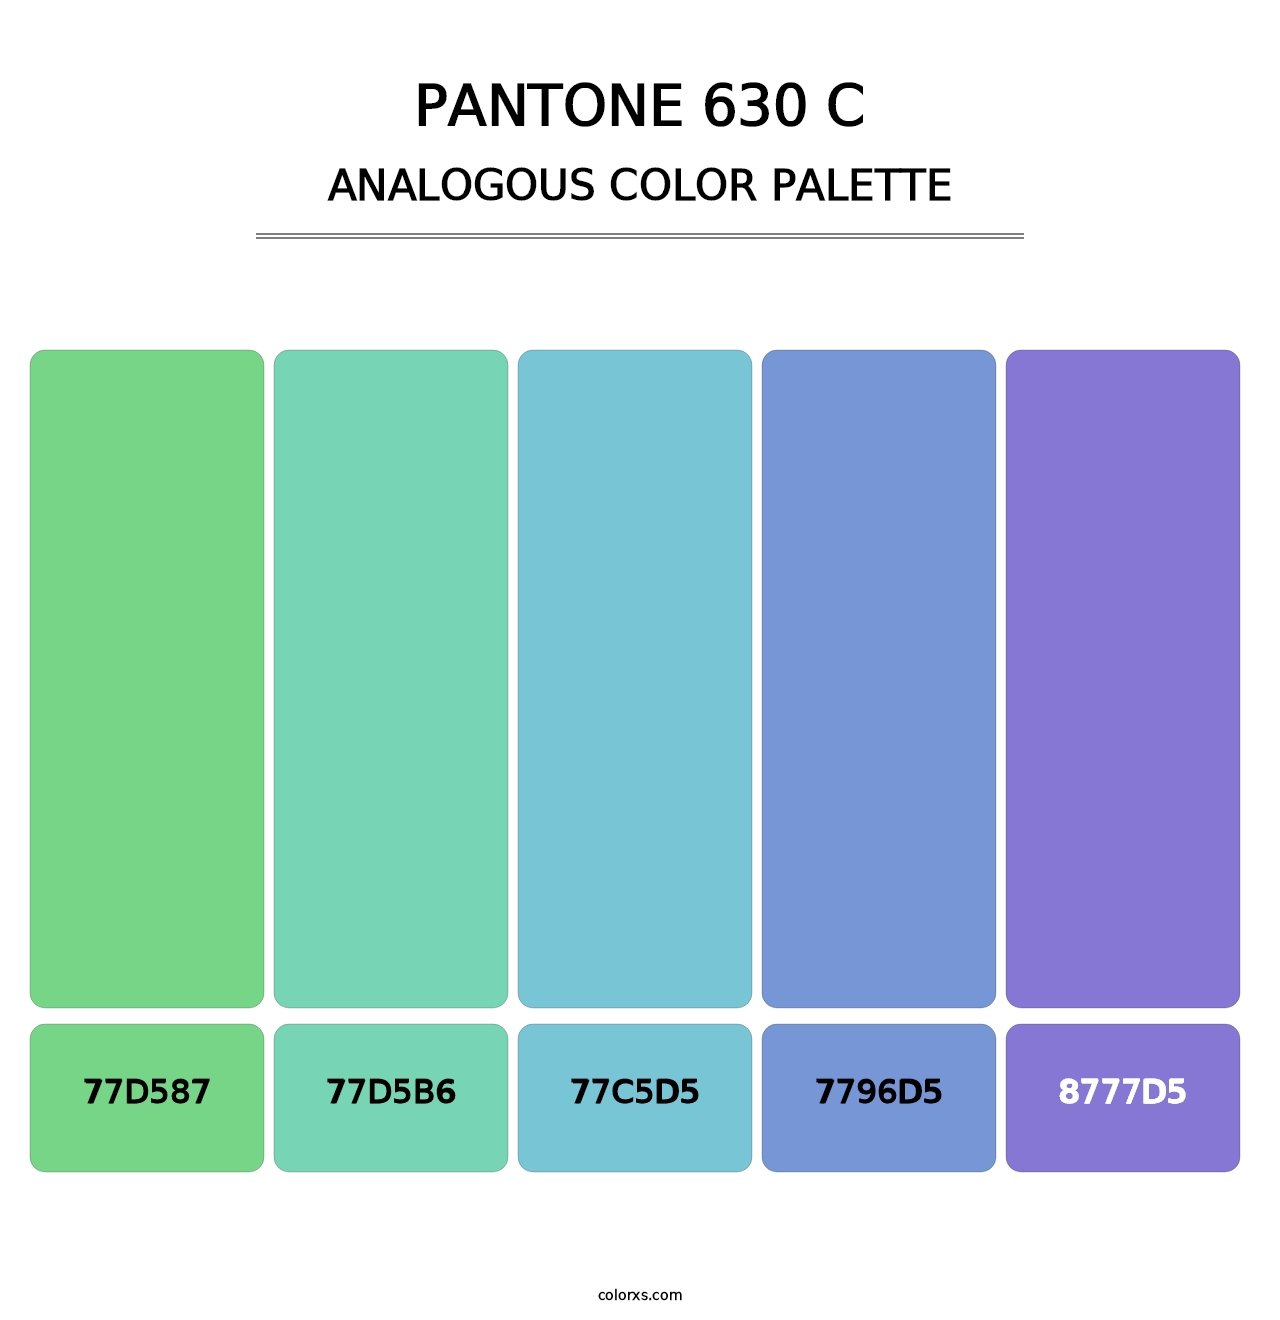 PANTONE 630 C - Analogous Color Palette